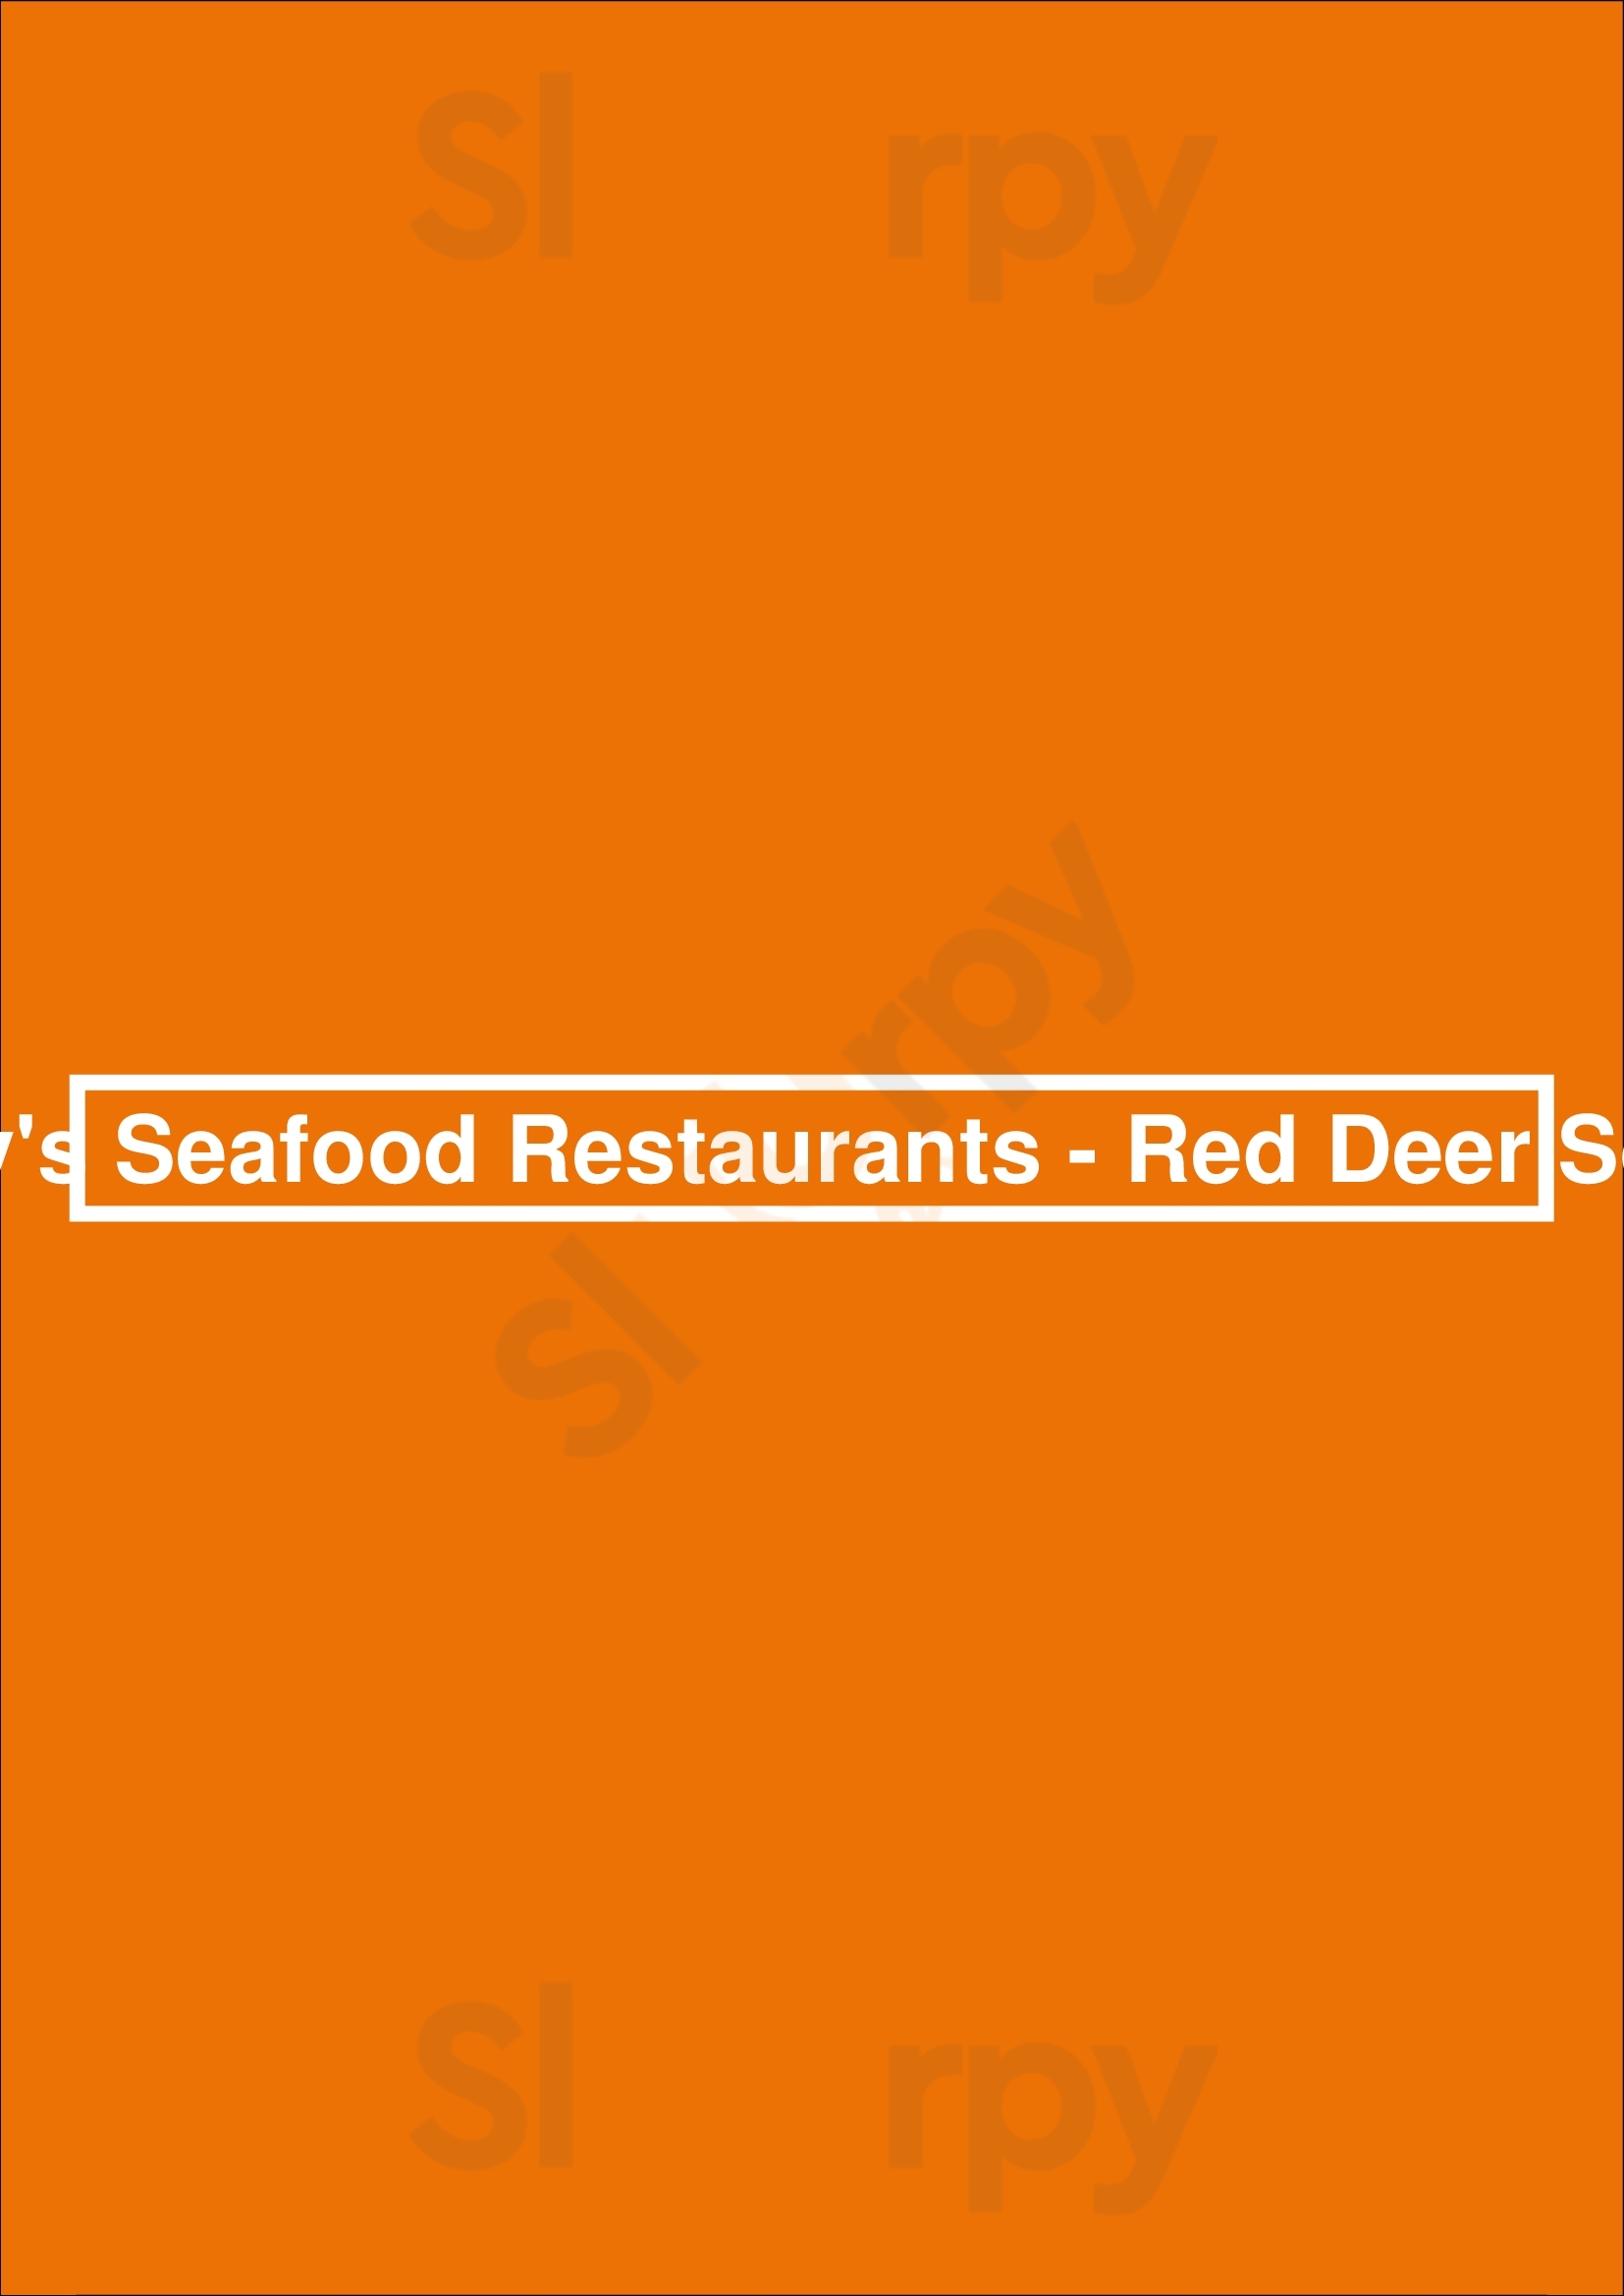 Joey's Seafood Restaurants - Red Deer South Red Deer Menu - 1